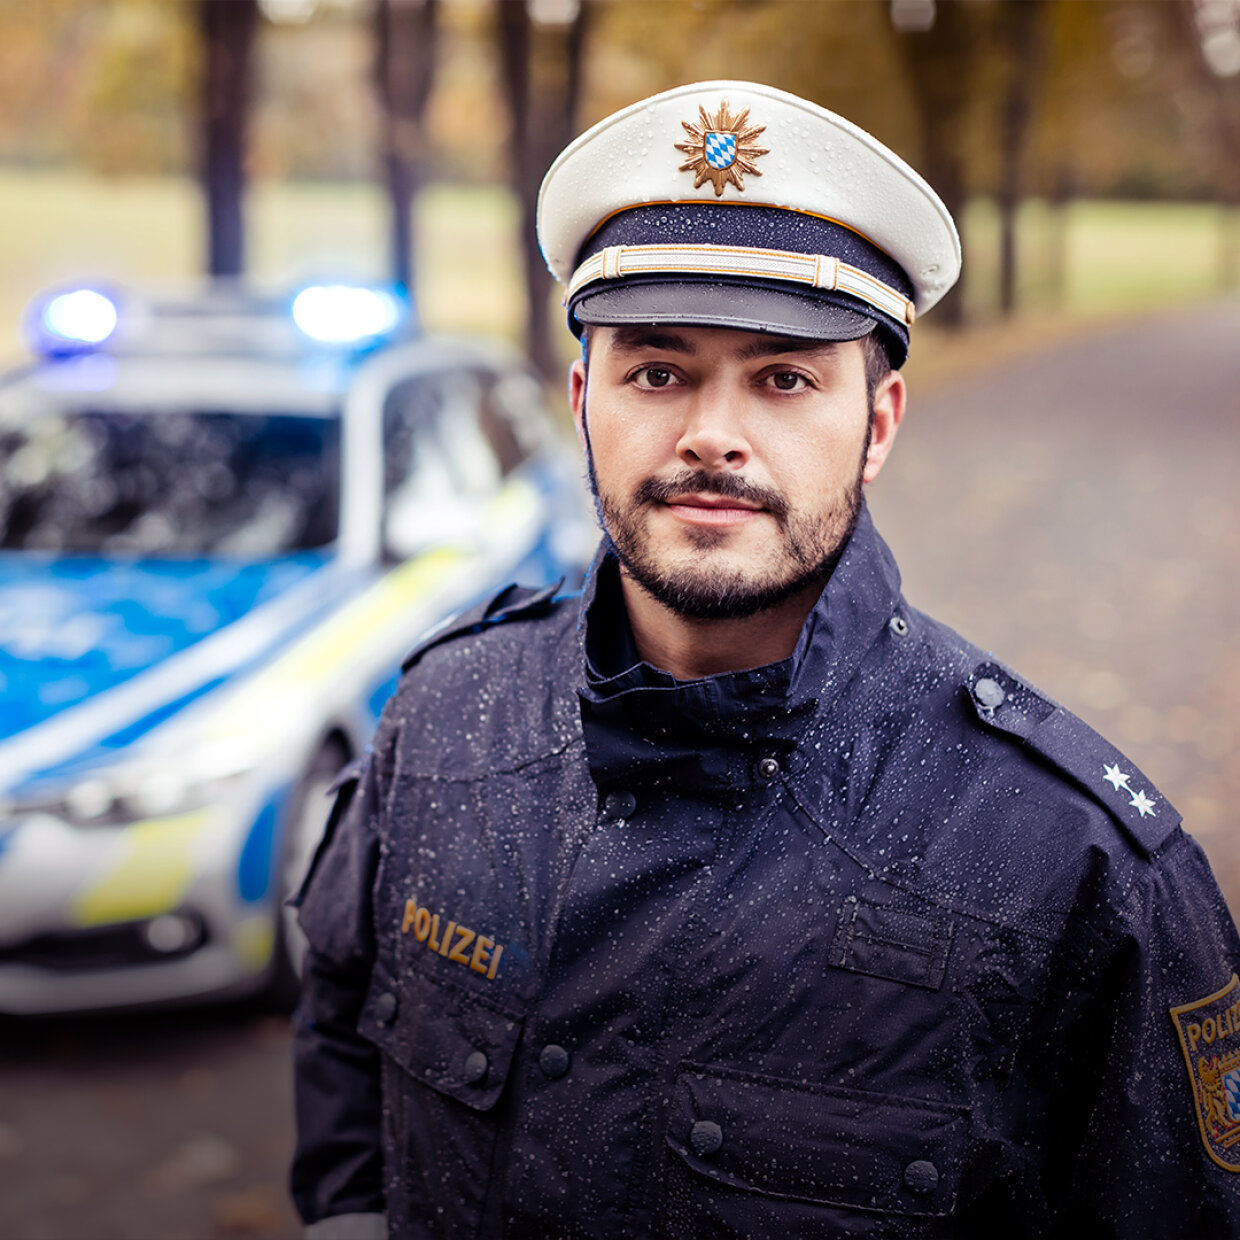 Polizist in Uniform vor Streifenwagen